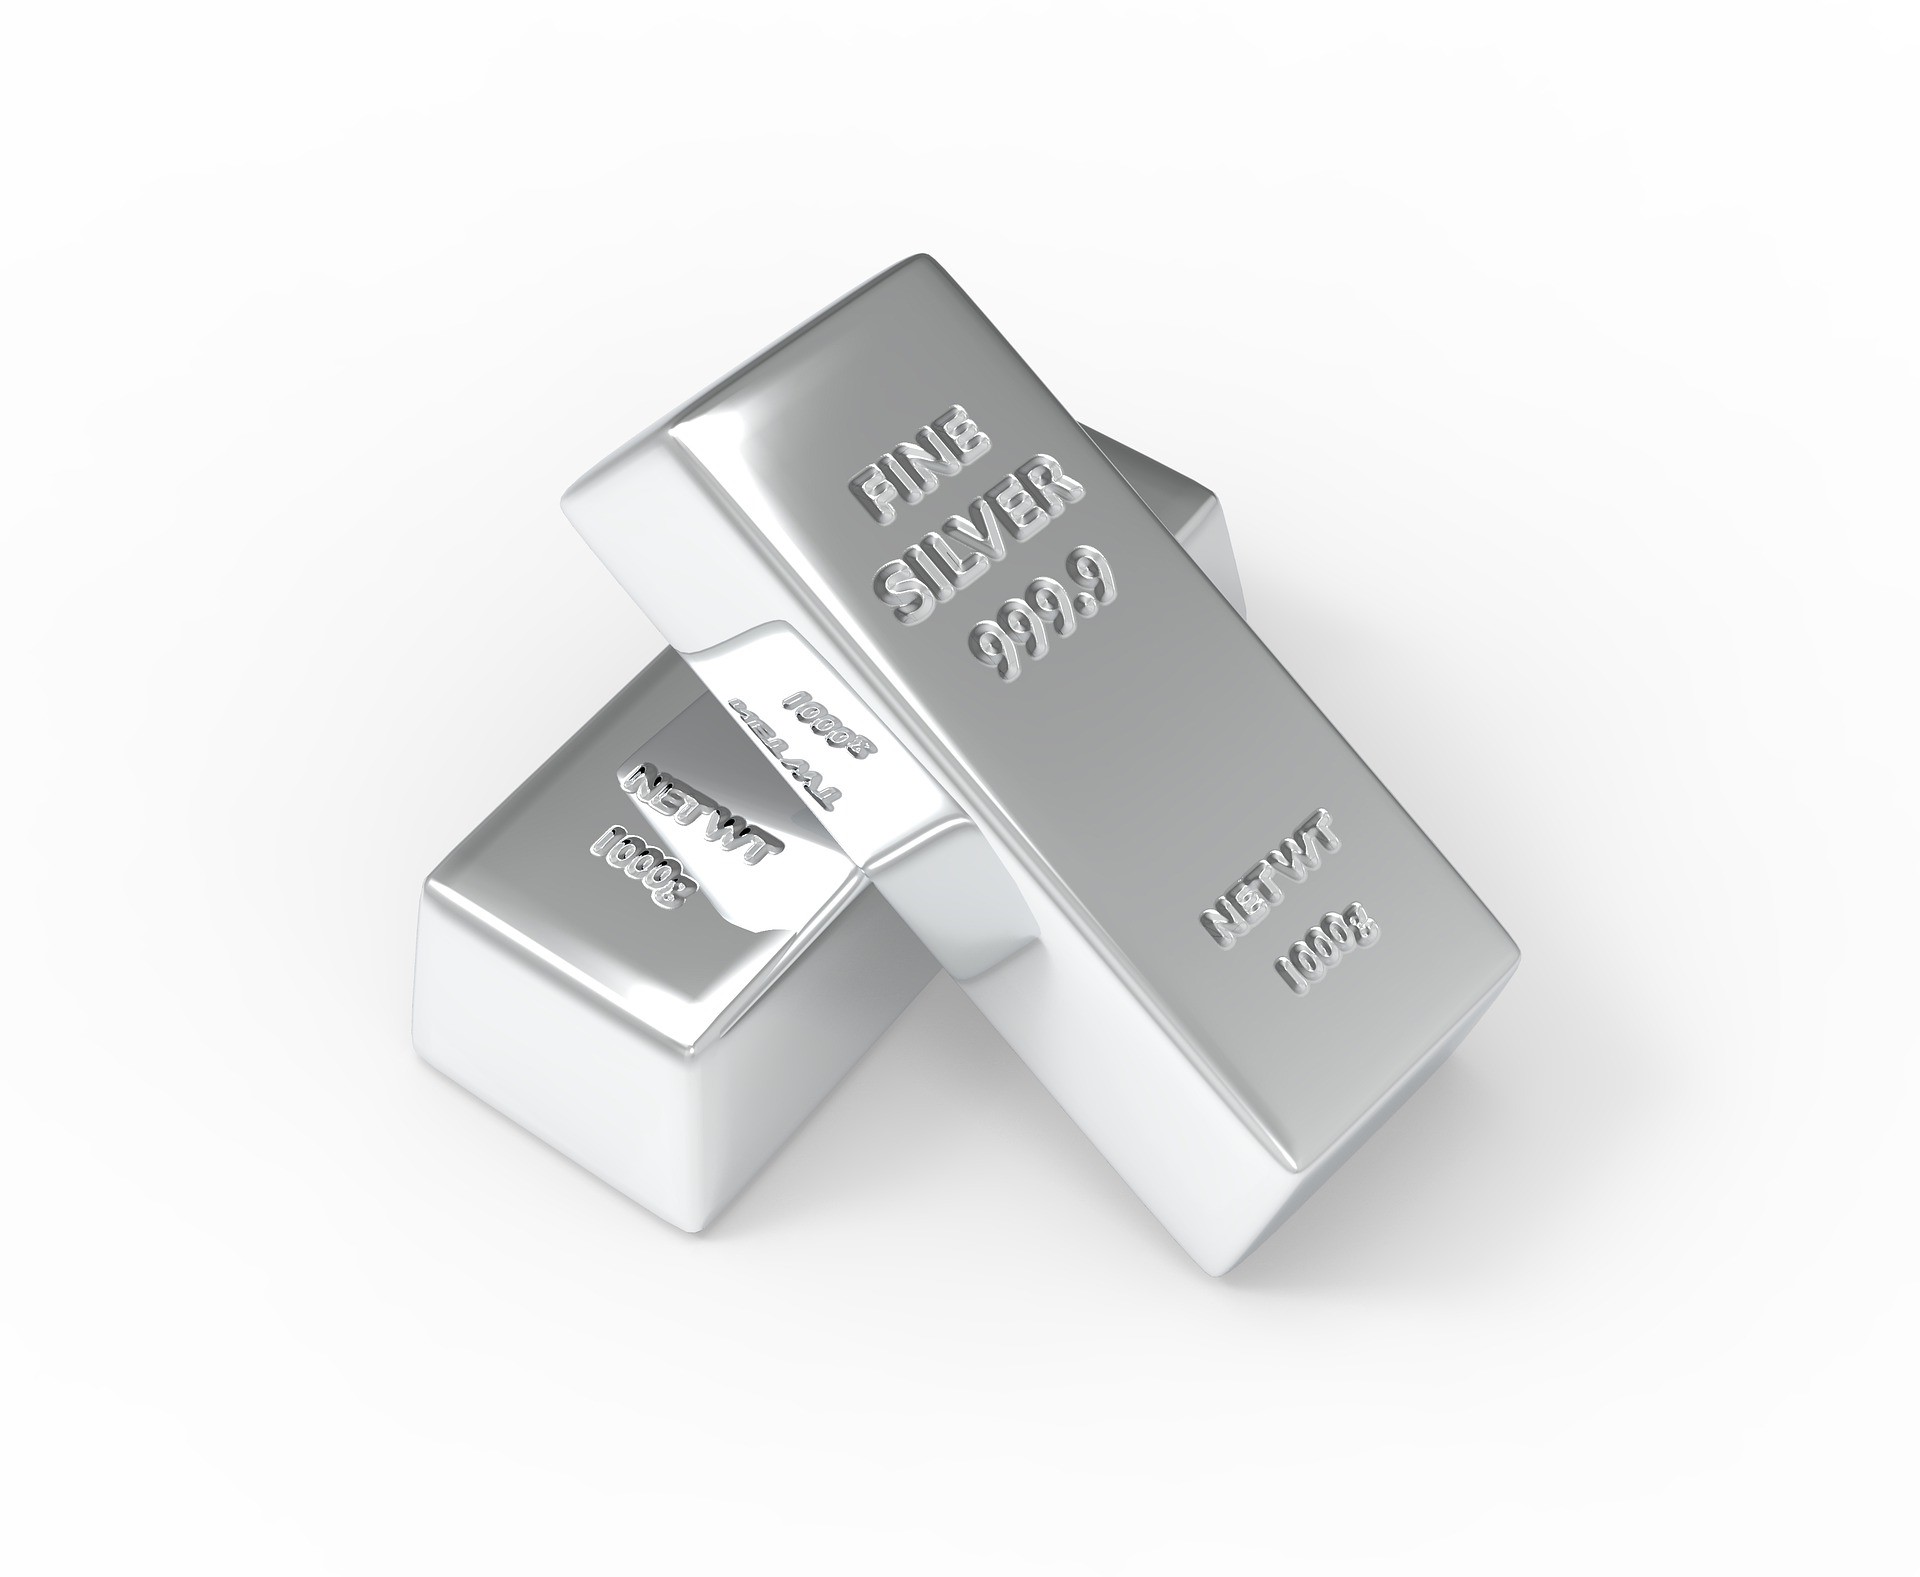 Xtrackers Physical Silver ETC (EUR) (OXA6 ETC) investerar i silver. Den totala kostnadskvoten uppgår till 0,40 % p.a. ETC replikerar resultatet för det underliggande indexet med en skuldförbindelse med säkerheter som backas upp av fysiska innehav av ädelmetallen. Xtrackers Physical Silver ETC (EUR) har tillgångar på 201 miljoner euro under förvaltning. ETC är äldre än 5 år och har sin hemvist i Jersey.